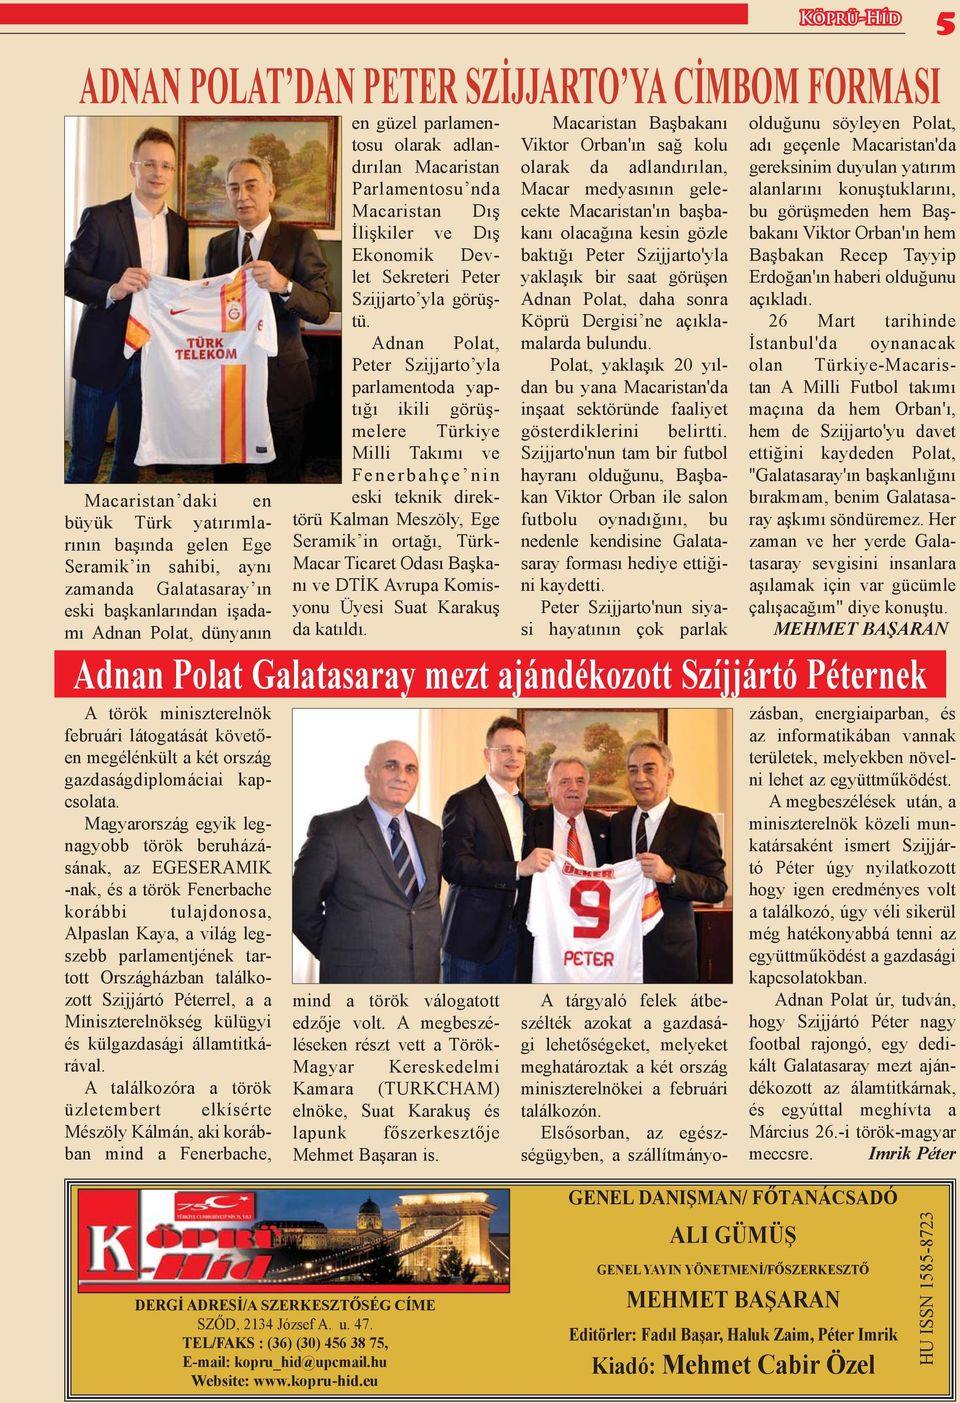 Magyarország egyik legnagyobb török beruházásának, az EGESERAMIK -nak, és a török Fenerbache korábbi tulajdonosa, Alpaslan Kaya, a világ legszebb parlamentjének tartott Országházban találkozott